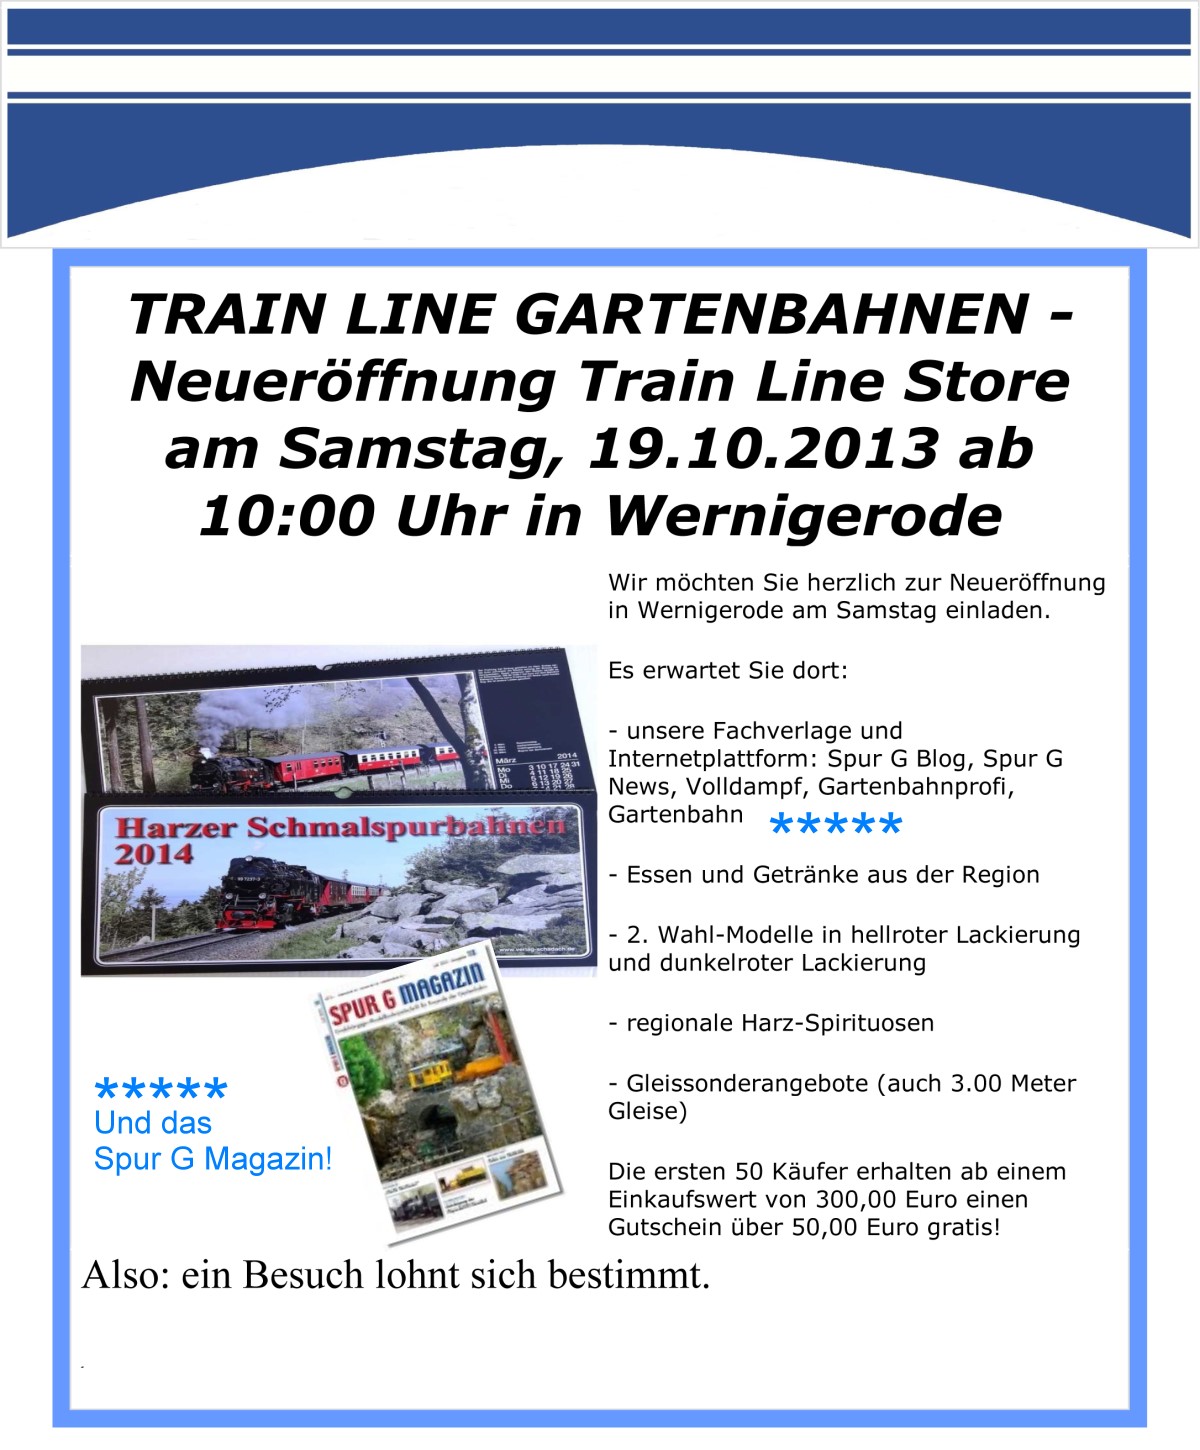 Geschftserffnung TrainLine Gartenbahnen am 19.10.2013 in Wernigerode um 10:00 Uhr geht es los! 